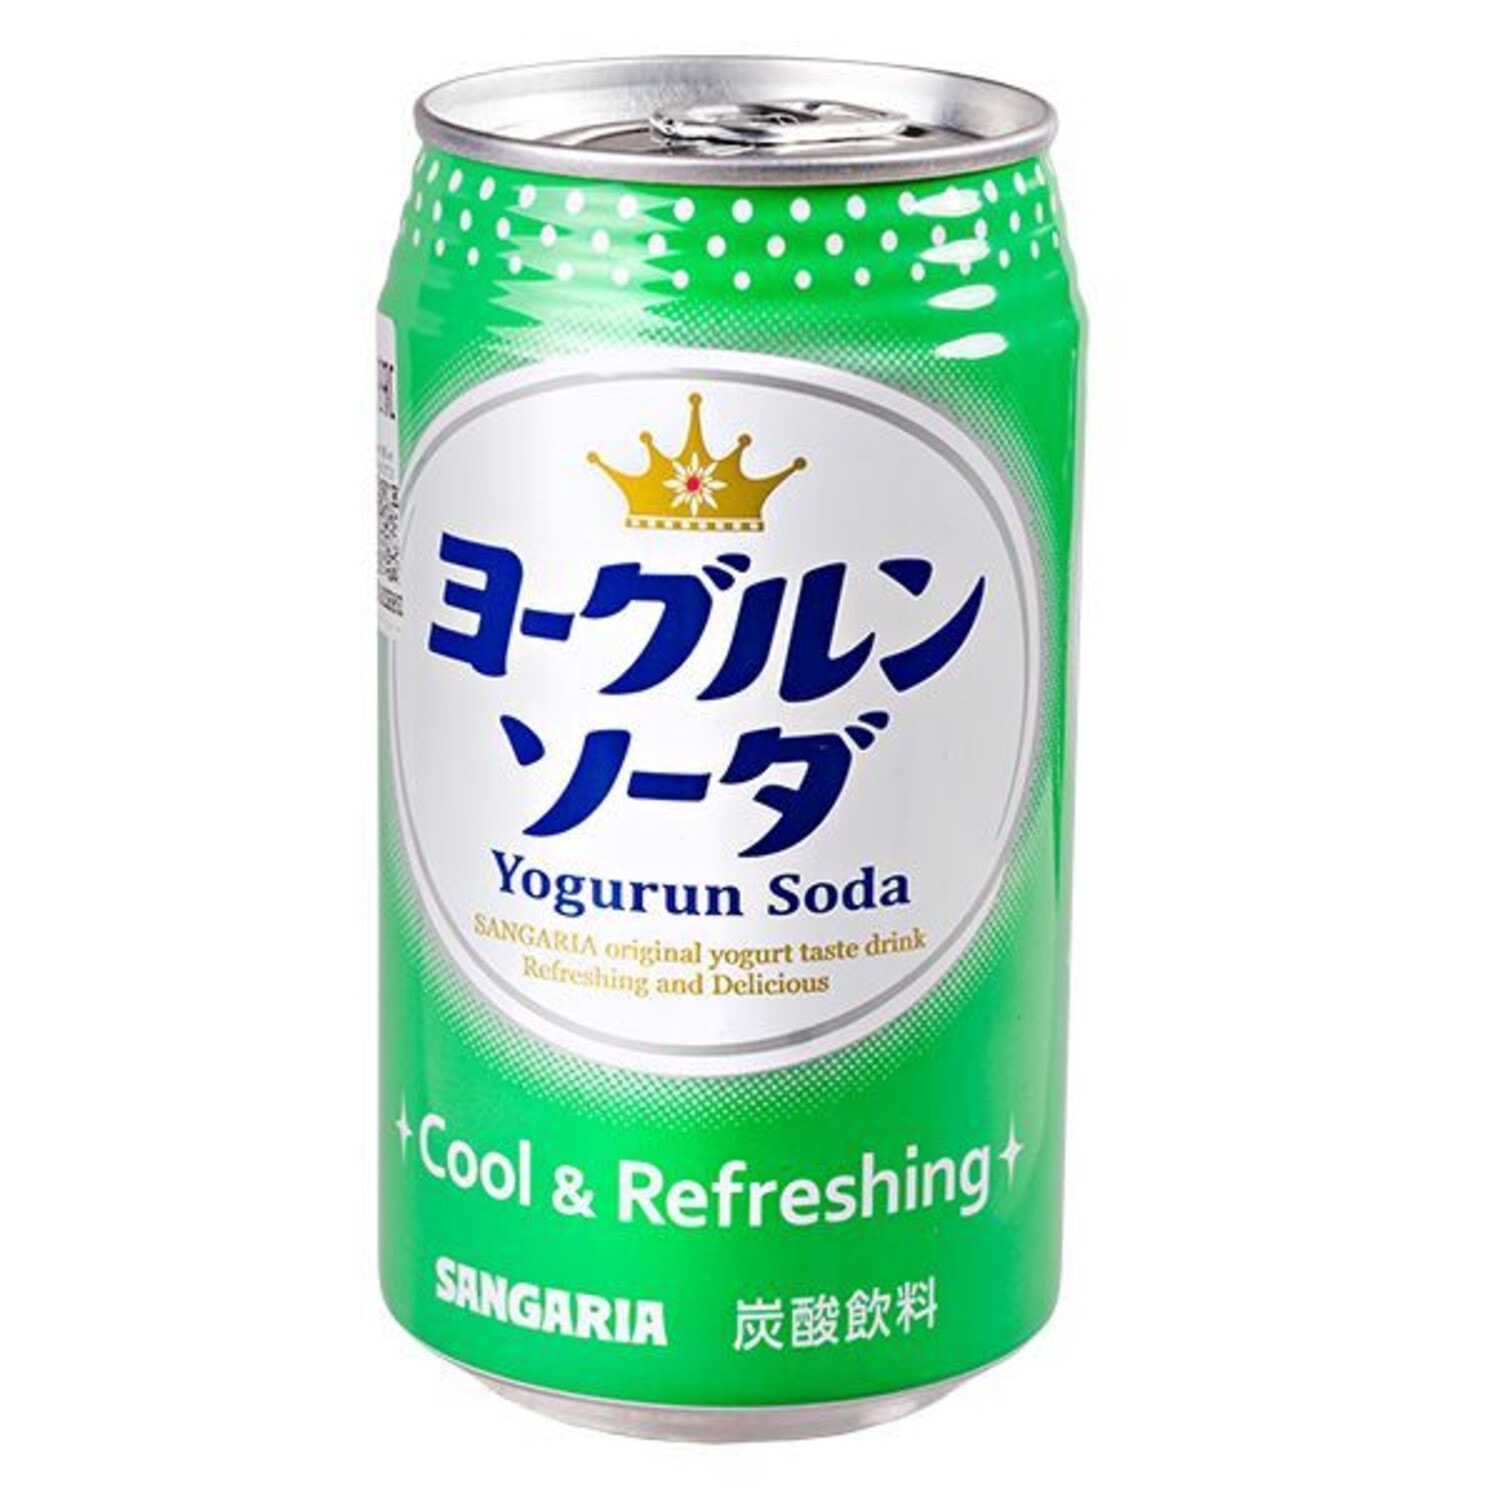 SANGARIA Yogurun soda Напиток газированный, йогурт-дыня,  банка, 350 мл/ 018915